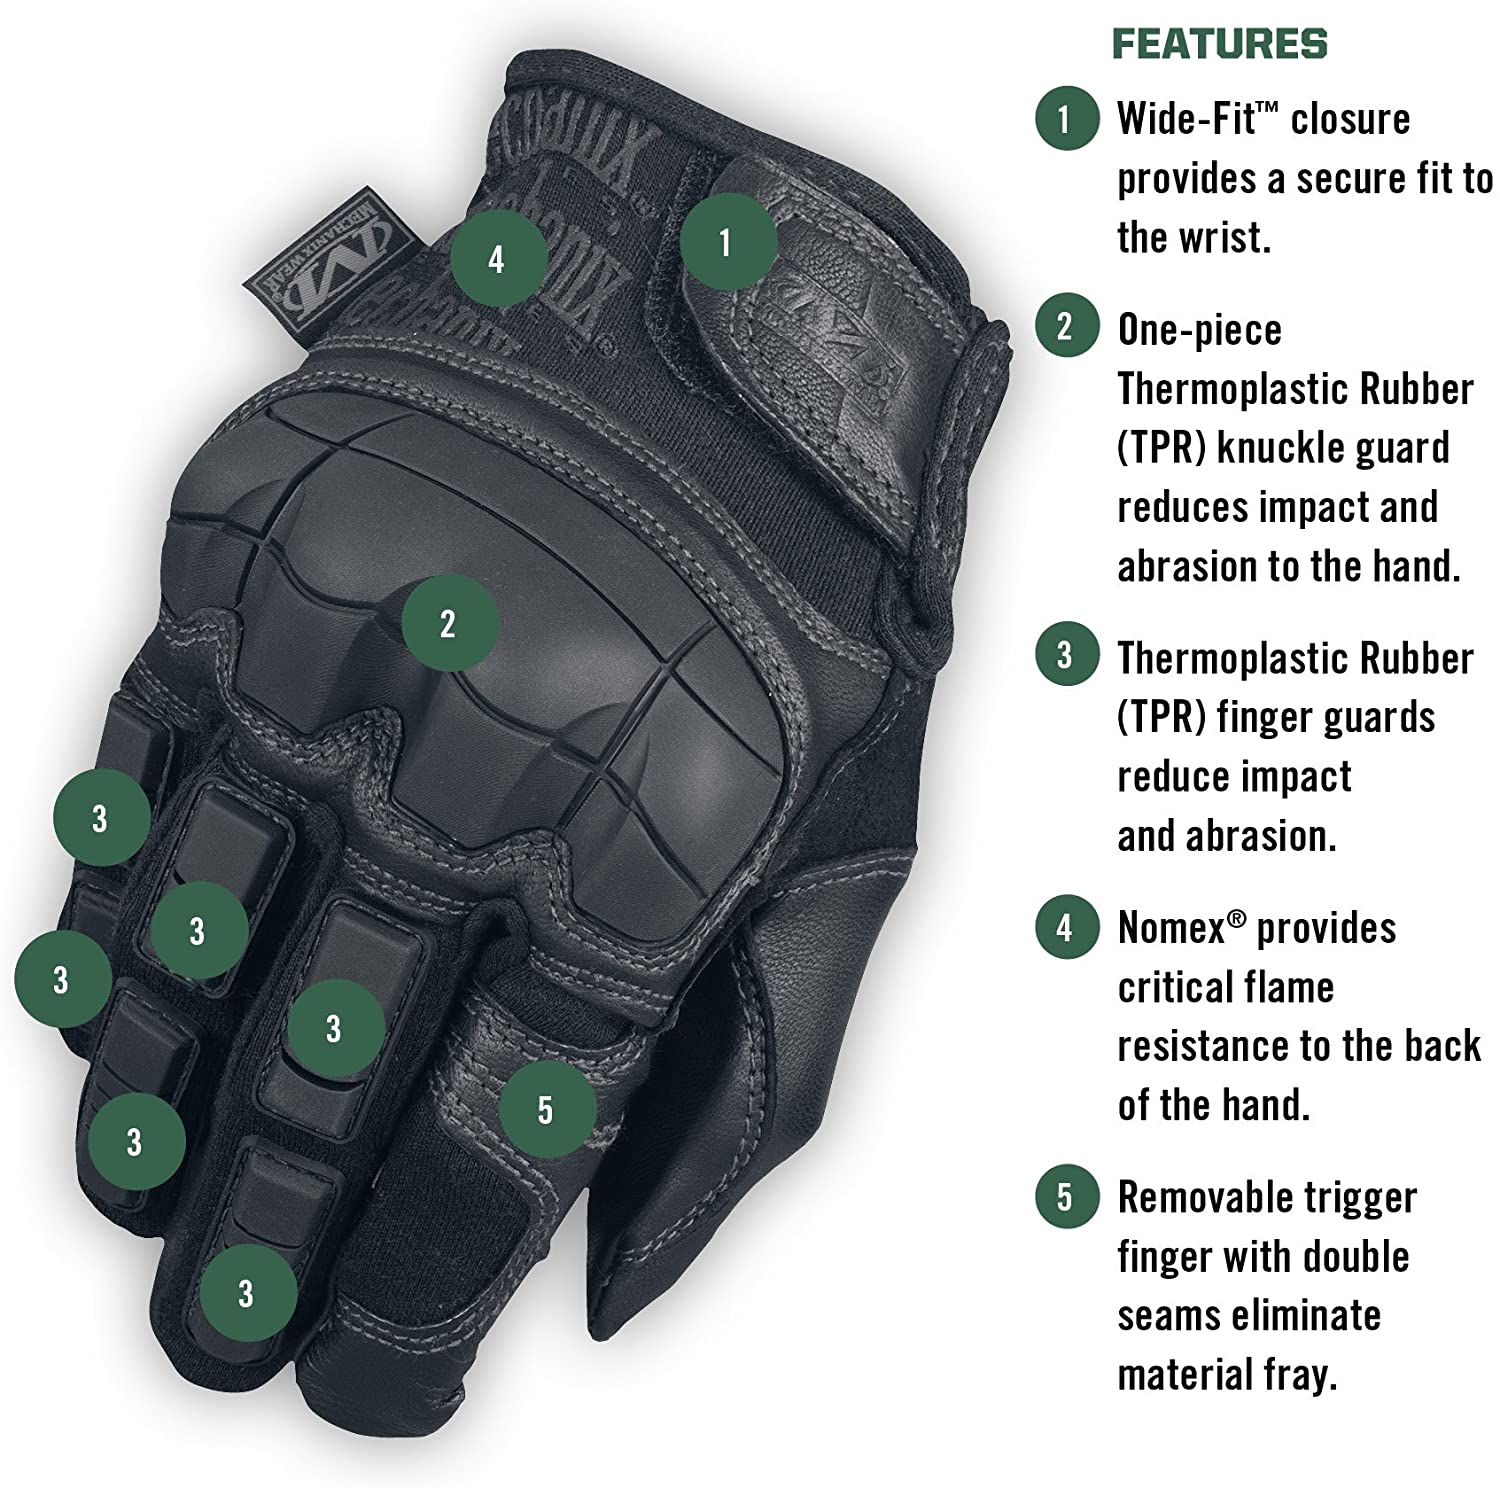 Fye Seguridad - GUANTES MECHANIX MPACT COVERT TACTICOS Los guantes Mechanix  Wear son los guantes mas elegidos por los profesionales alrededor del  mundo, su protección y precisión, junto con su agarre y